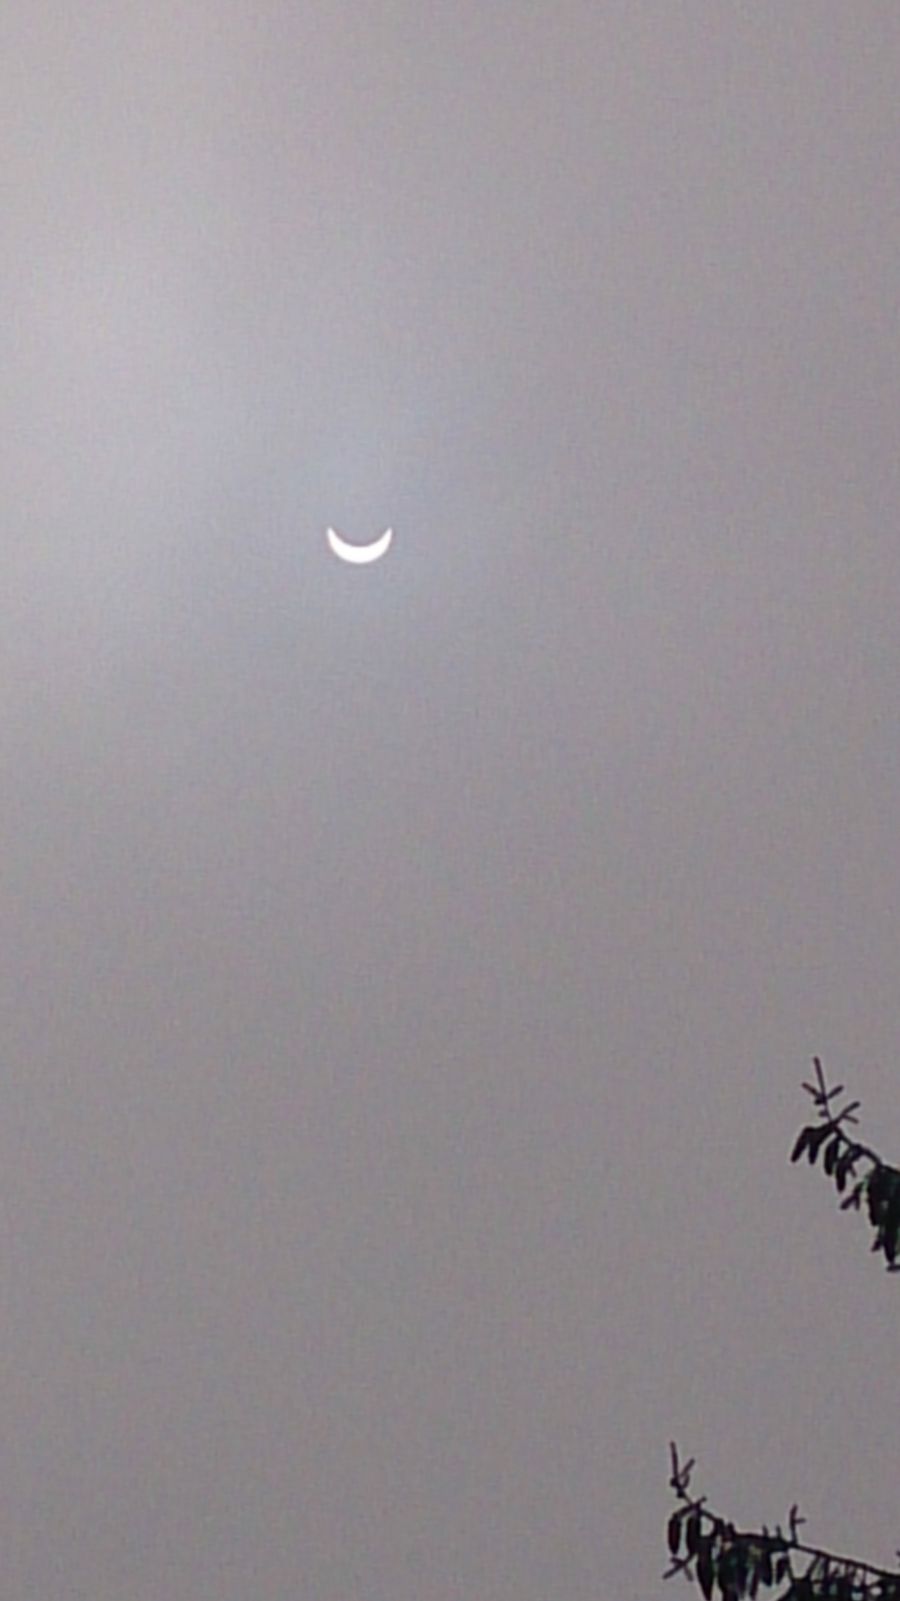 Maximum de l'éclipse (photo prise vers 10h30)